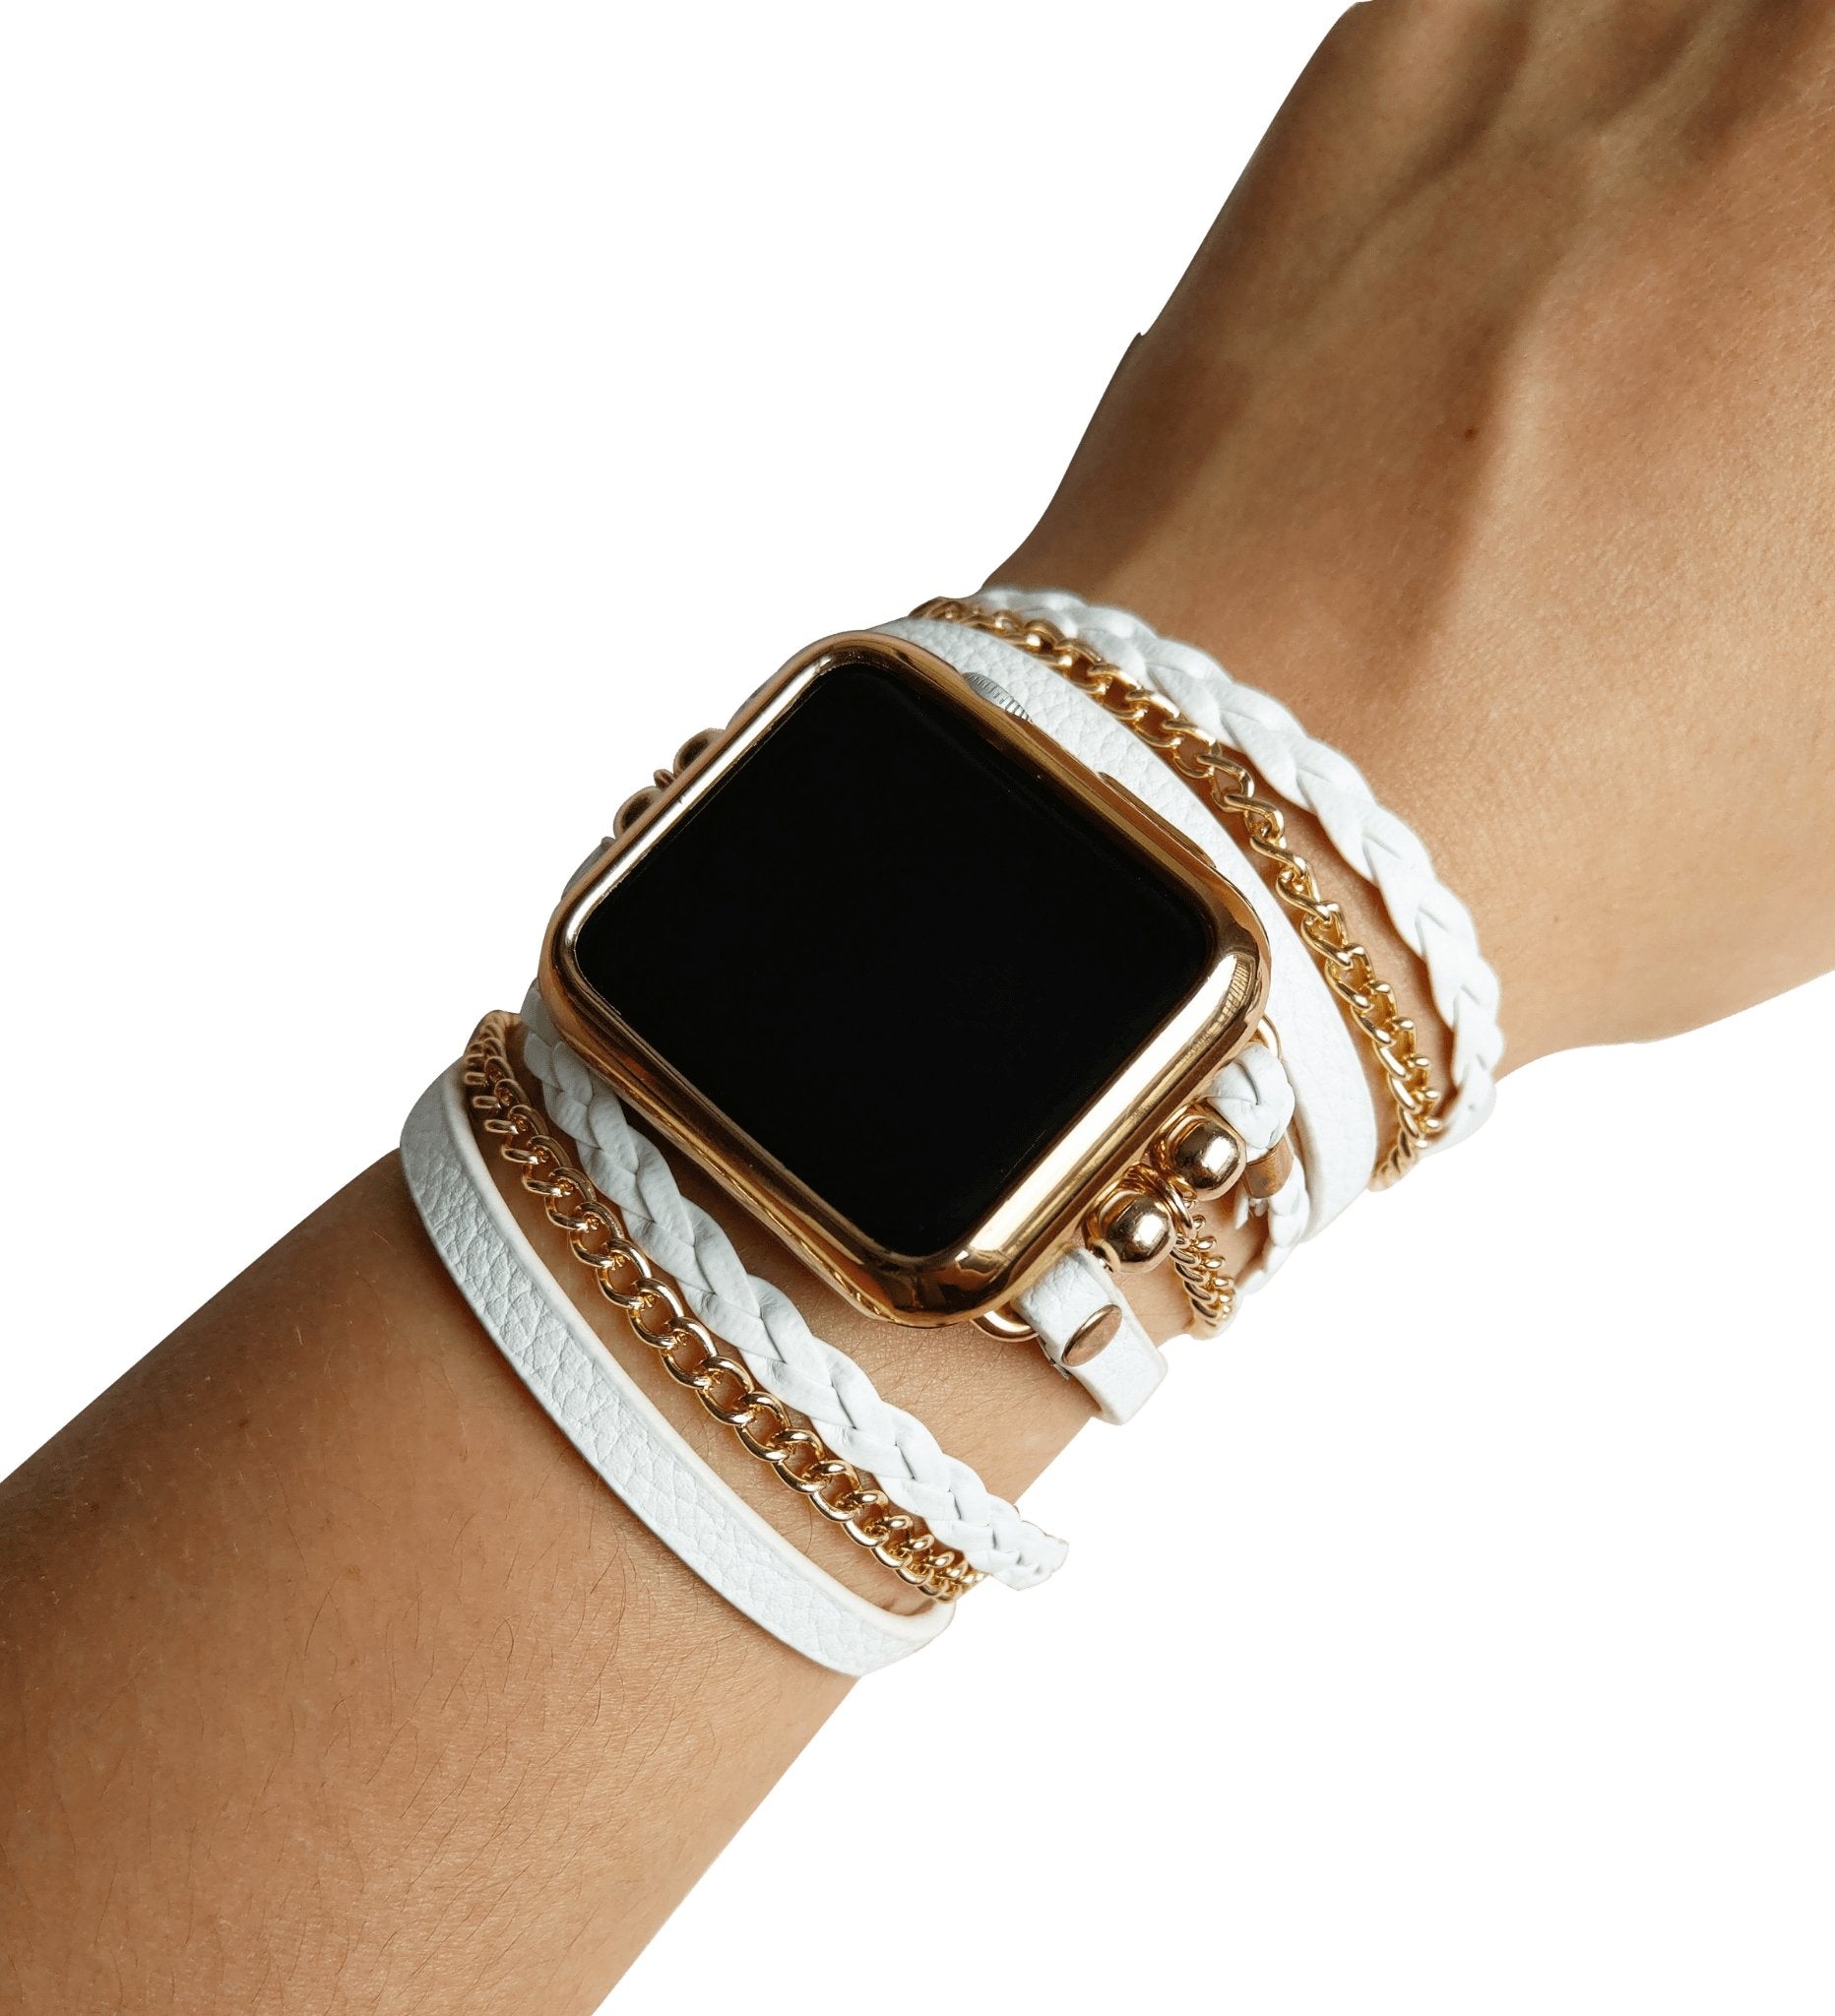 White Boho Hippie Wrap Bracelet Watch Band with Gold Chain - Mareevo